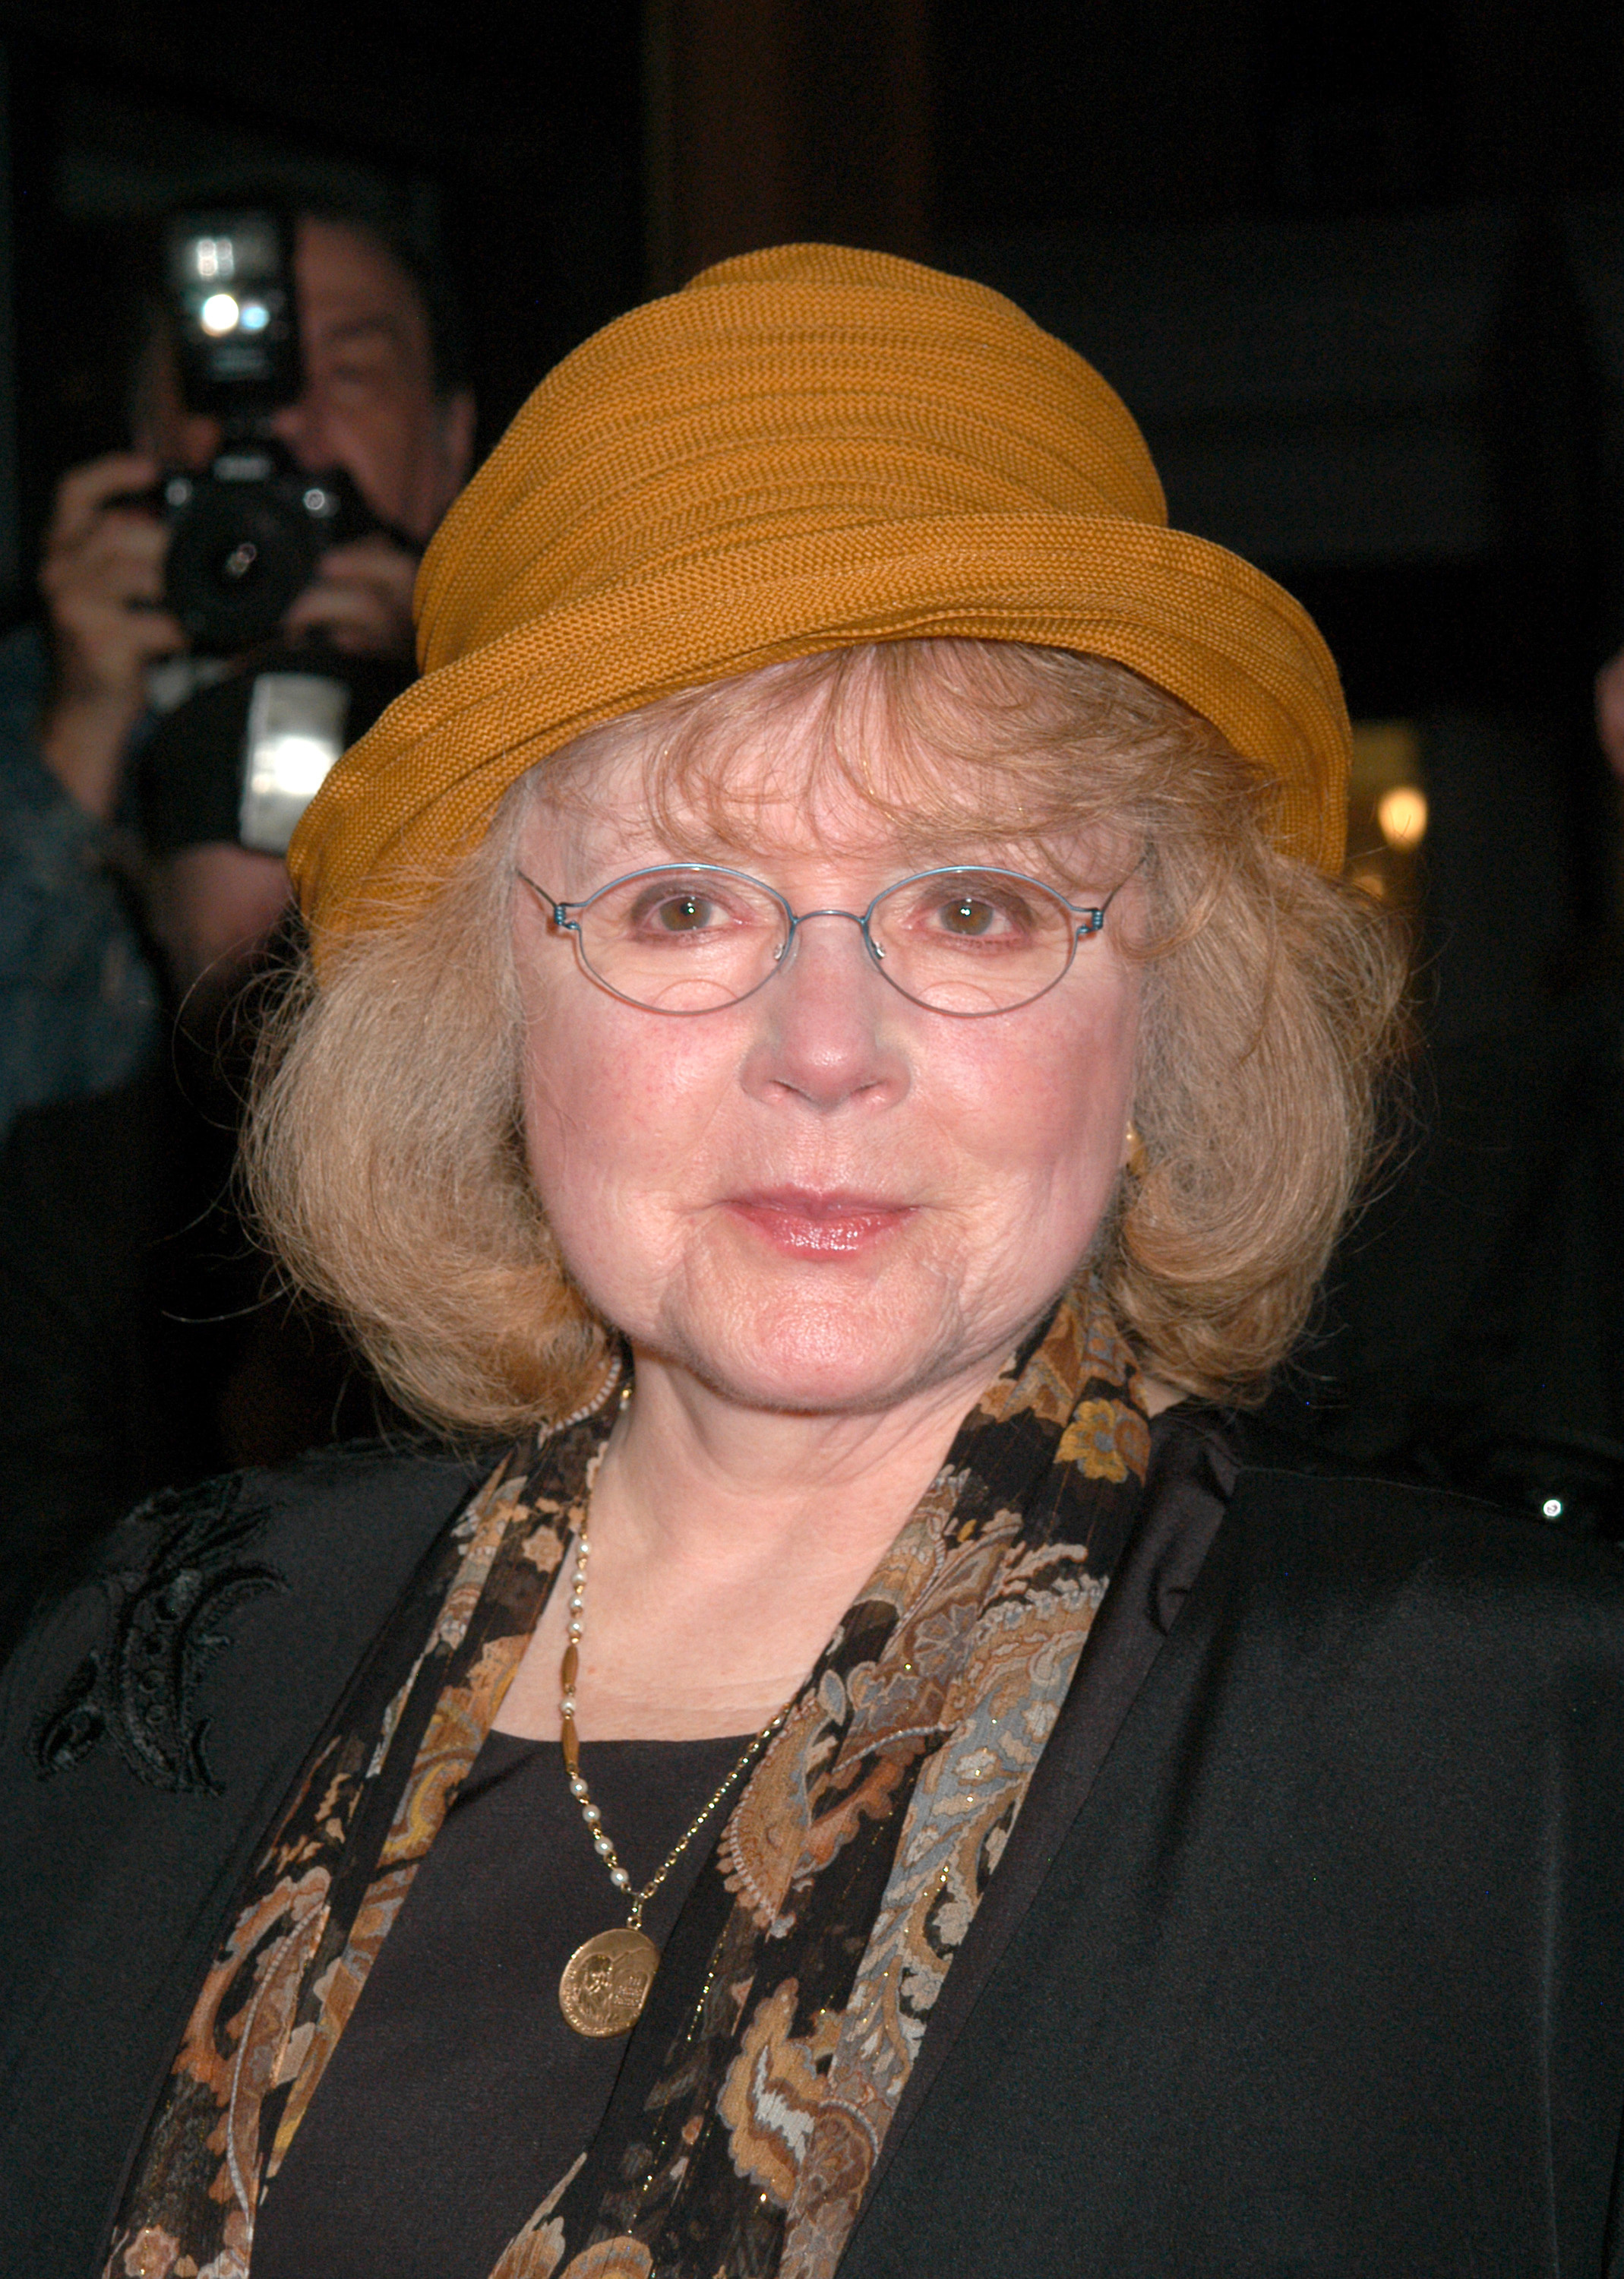 Hon skulle då spela rollen som Margaret White - en roll som tidigare spelats av Piper Laurie.